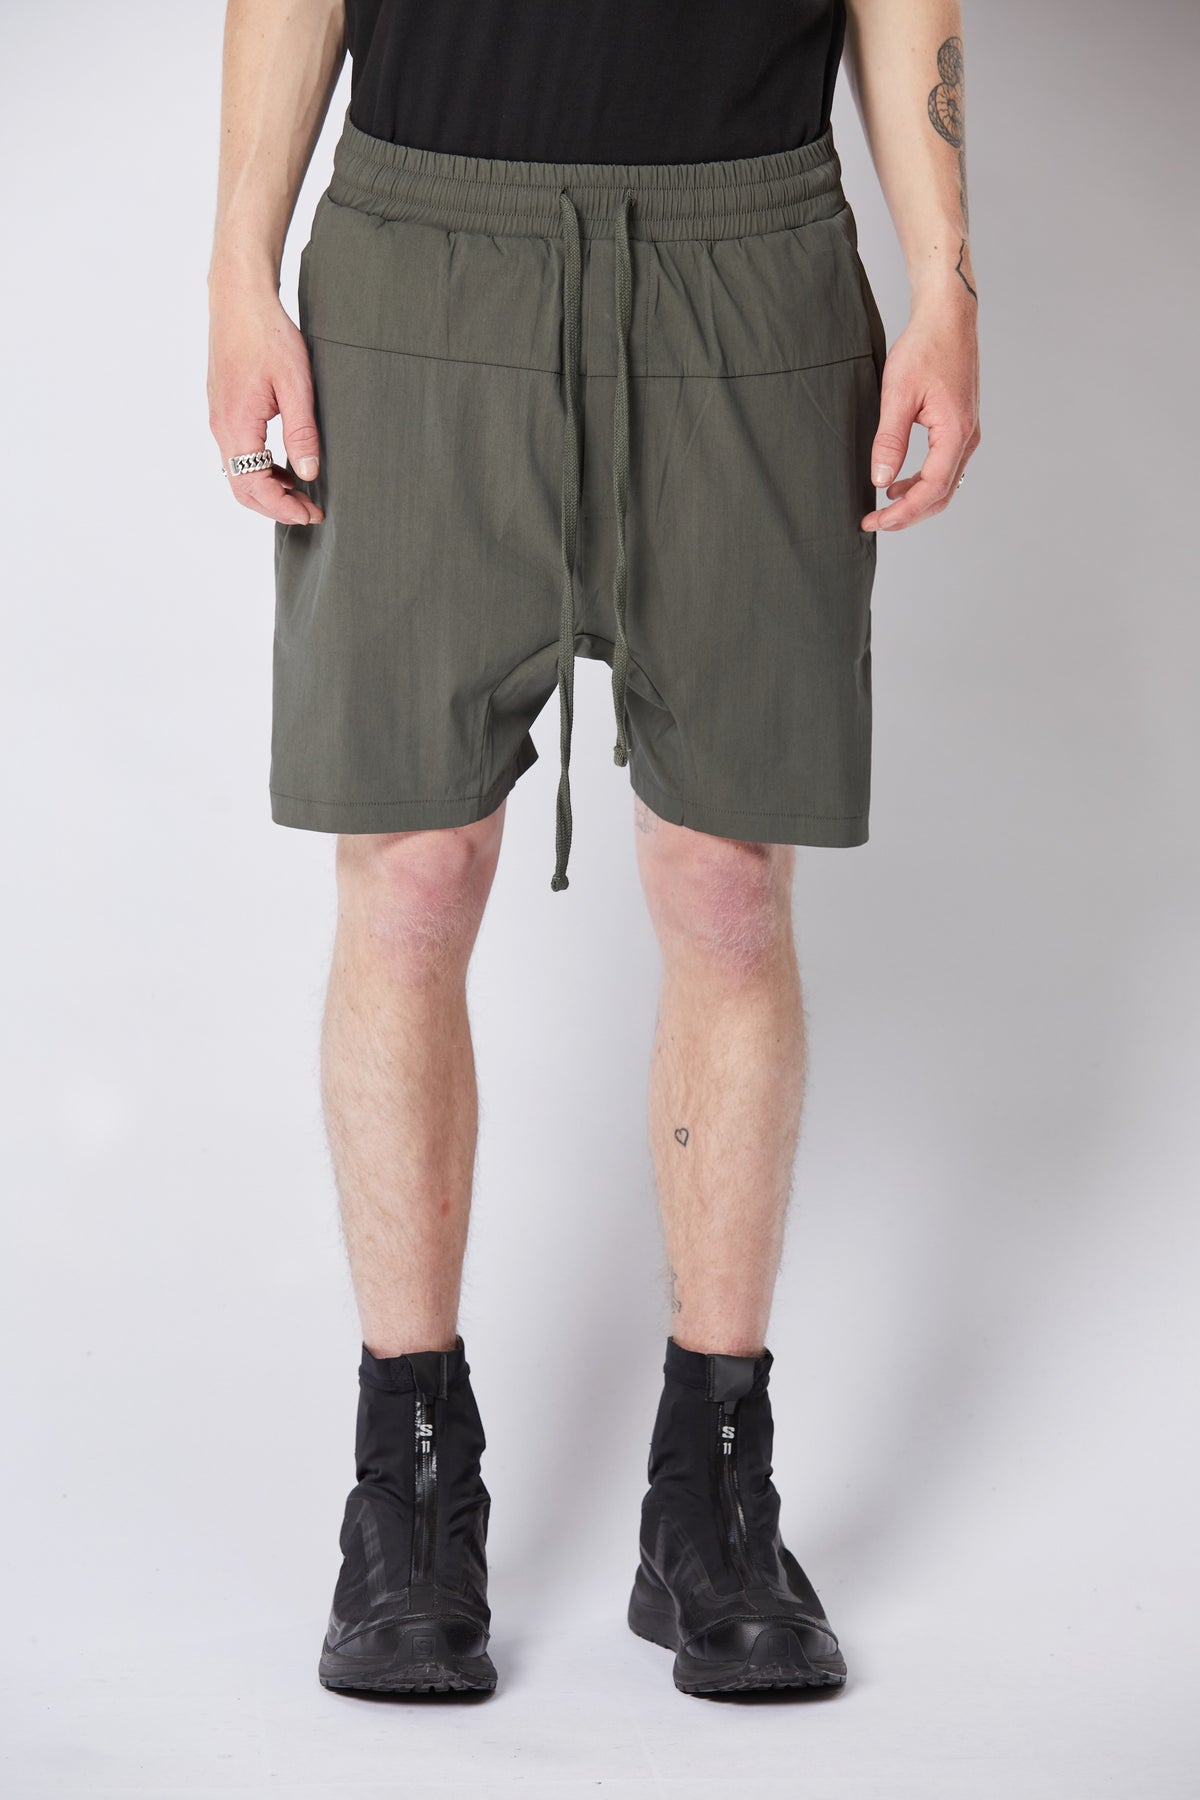 thom/krom M ST 422 Drop Crotch Shorts - Green